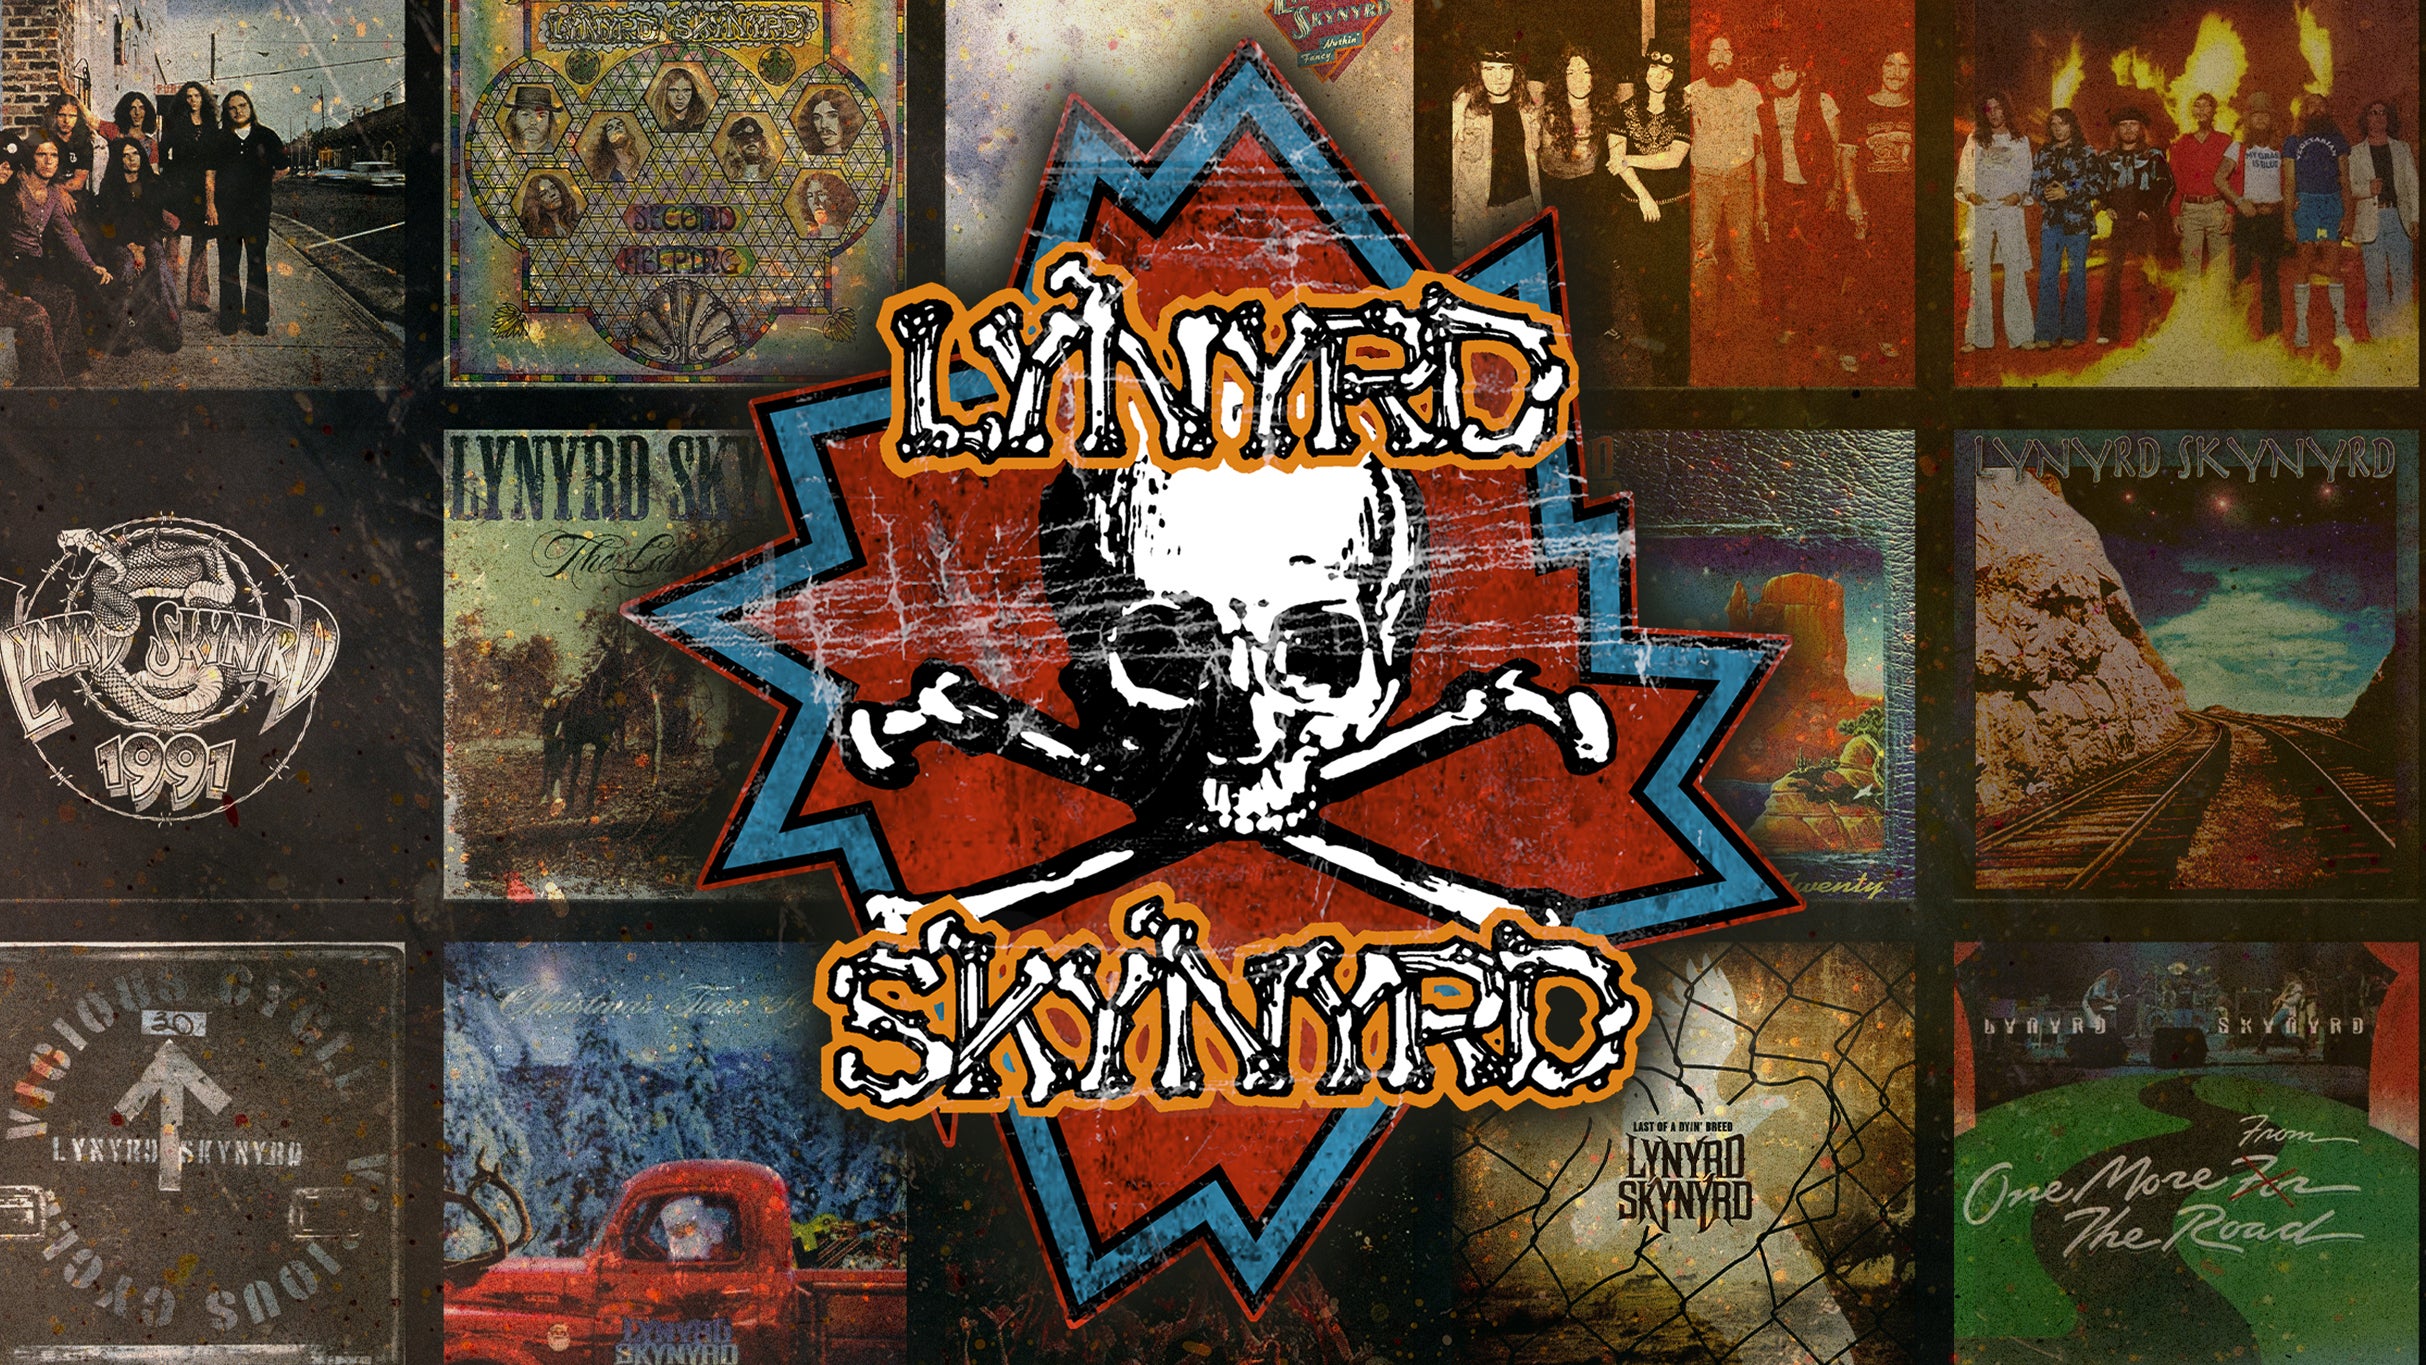 Lynyrd Skynyrd w/ ZZ Top at Walmart AMP